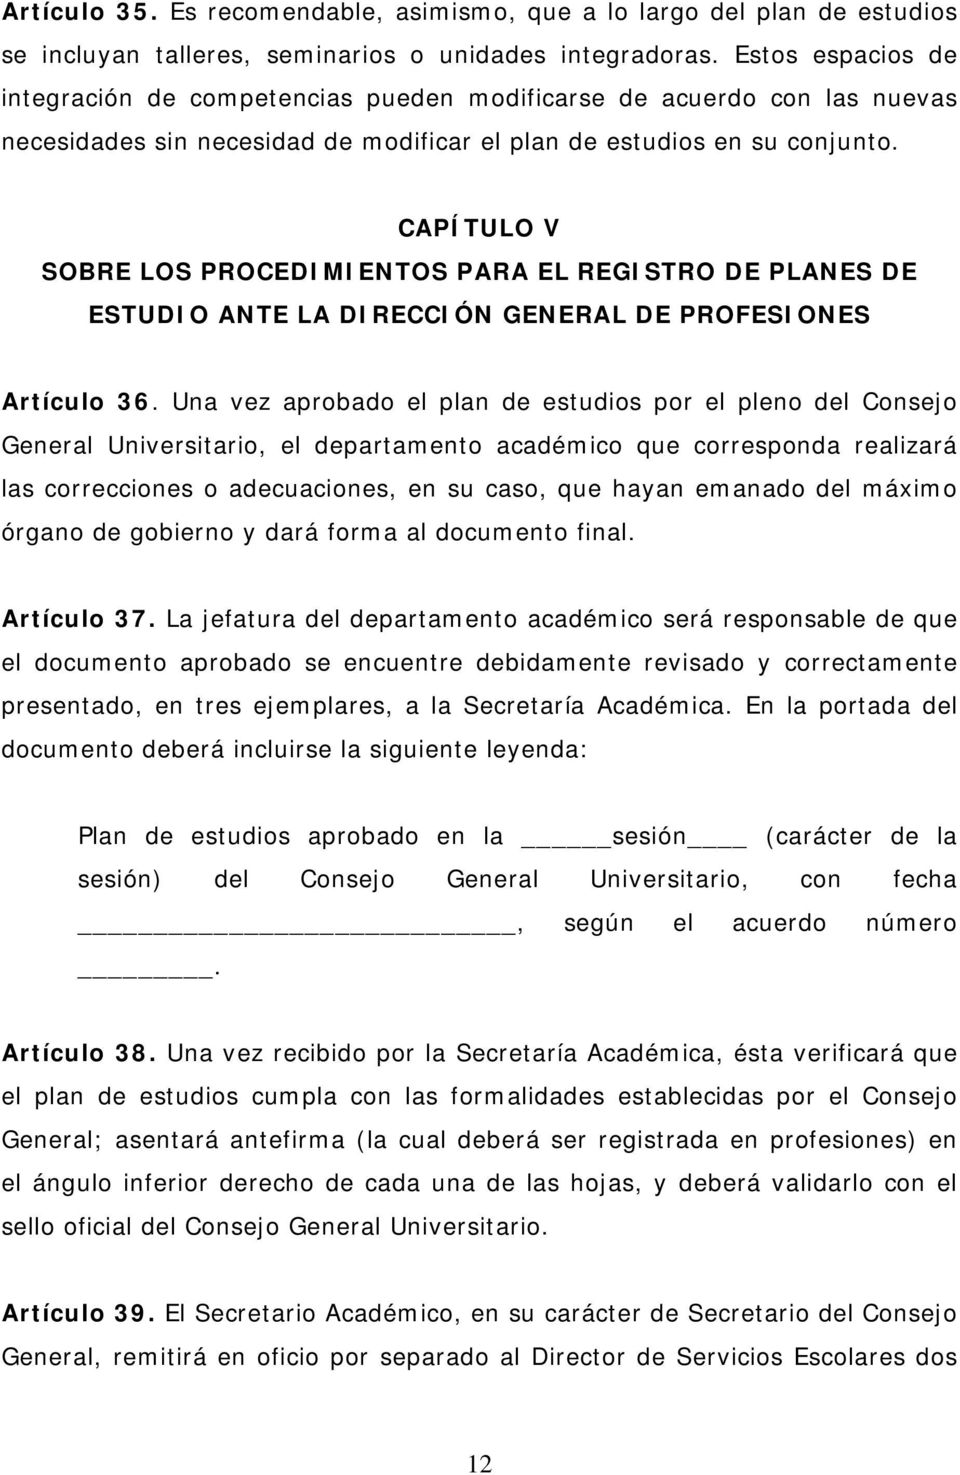 CAPÍTULO V SOBRE LOS PROCEDIMIENTOS PARA EL REGISTRO DE PLANES DE ESTUDIO ANTE LA DIRECCIÓN GENERAL DE PROFESIONES Artículo 36.